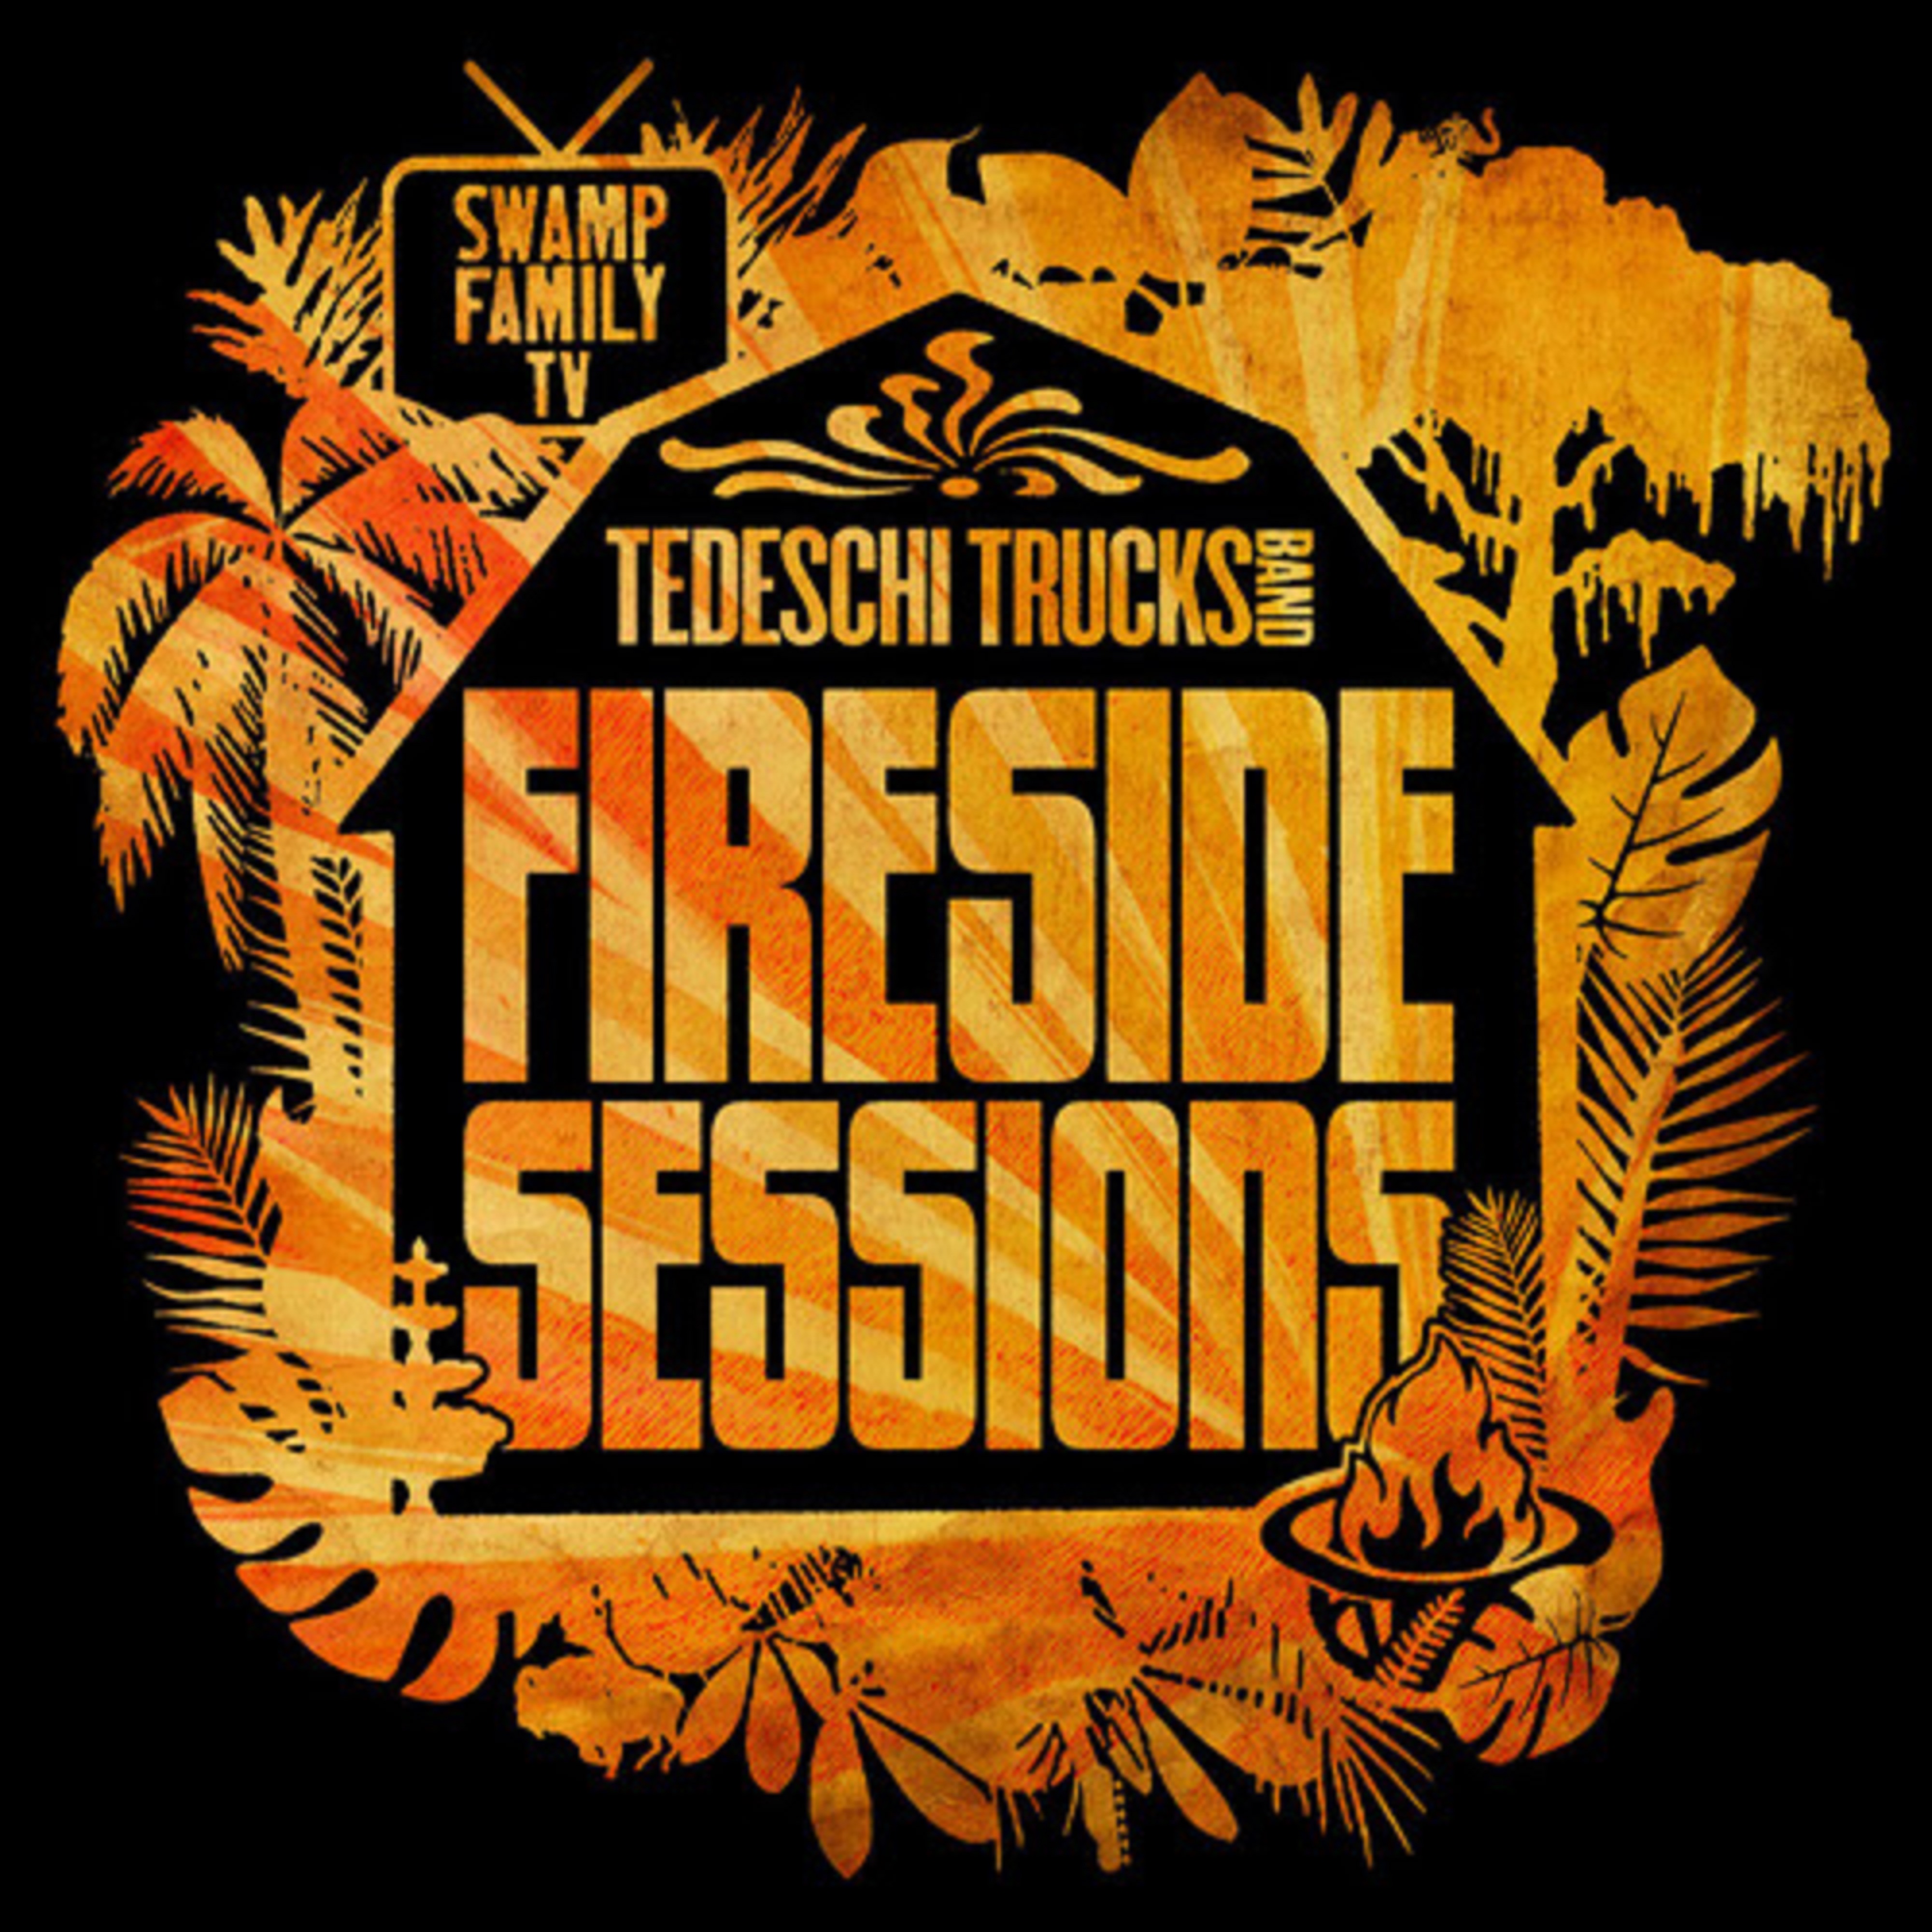 TEDESCHI TRUCKS ANNOUNCE "FIRESIDE LIVE" CONCERT DATES